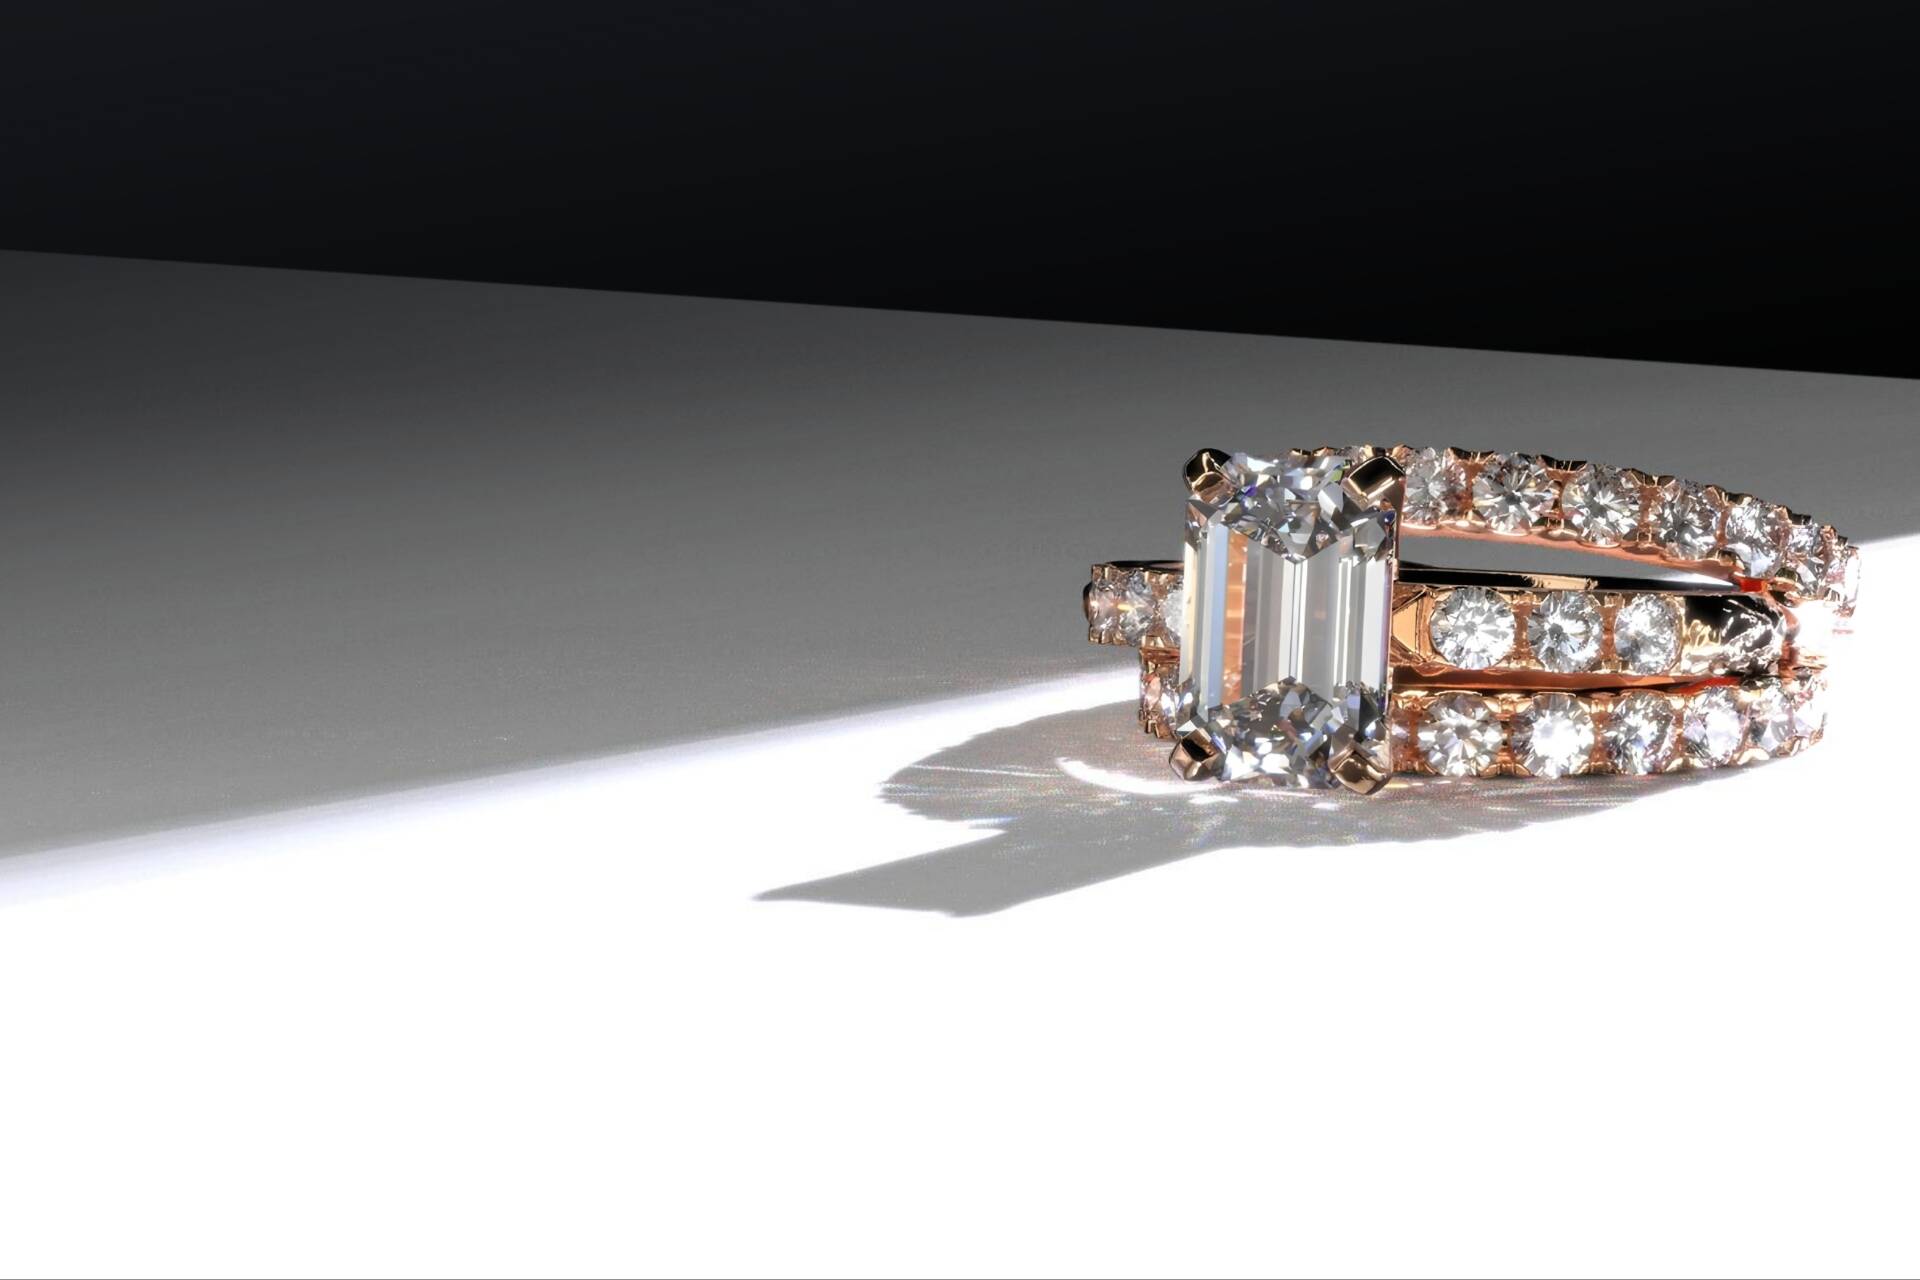 kihlasõrmused, eesti disain, keefirivunts, käsitöö, teemantiga kihlasõrmus, laboriteemant, laboris kasvatatud teemant